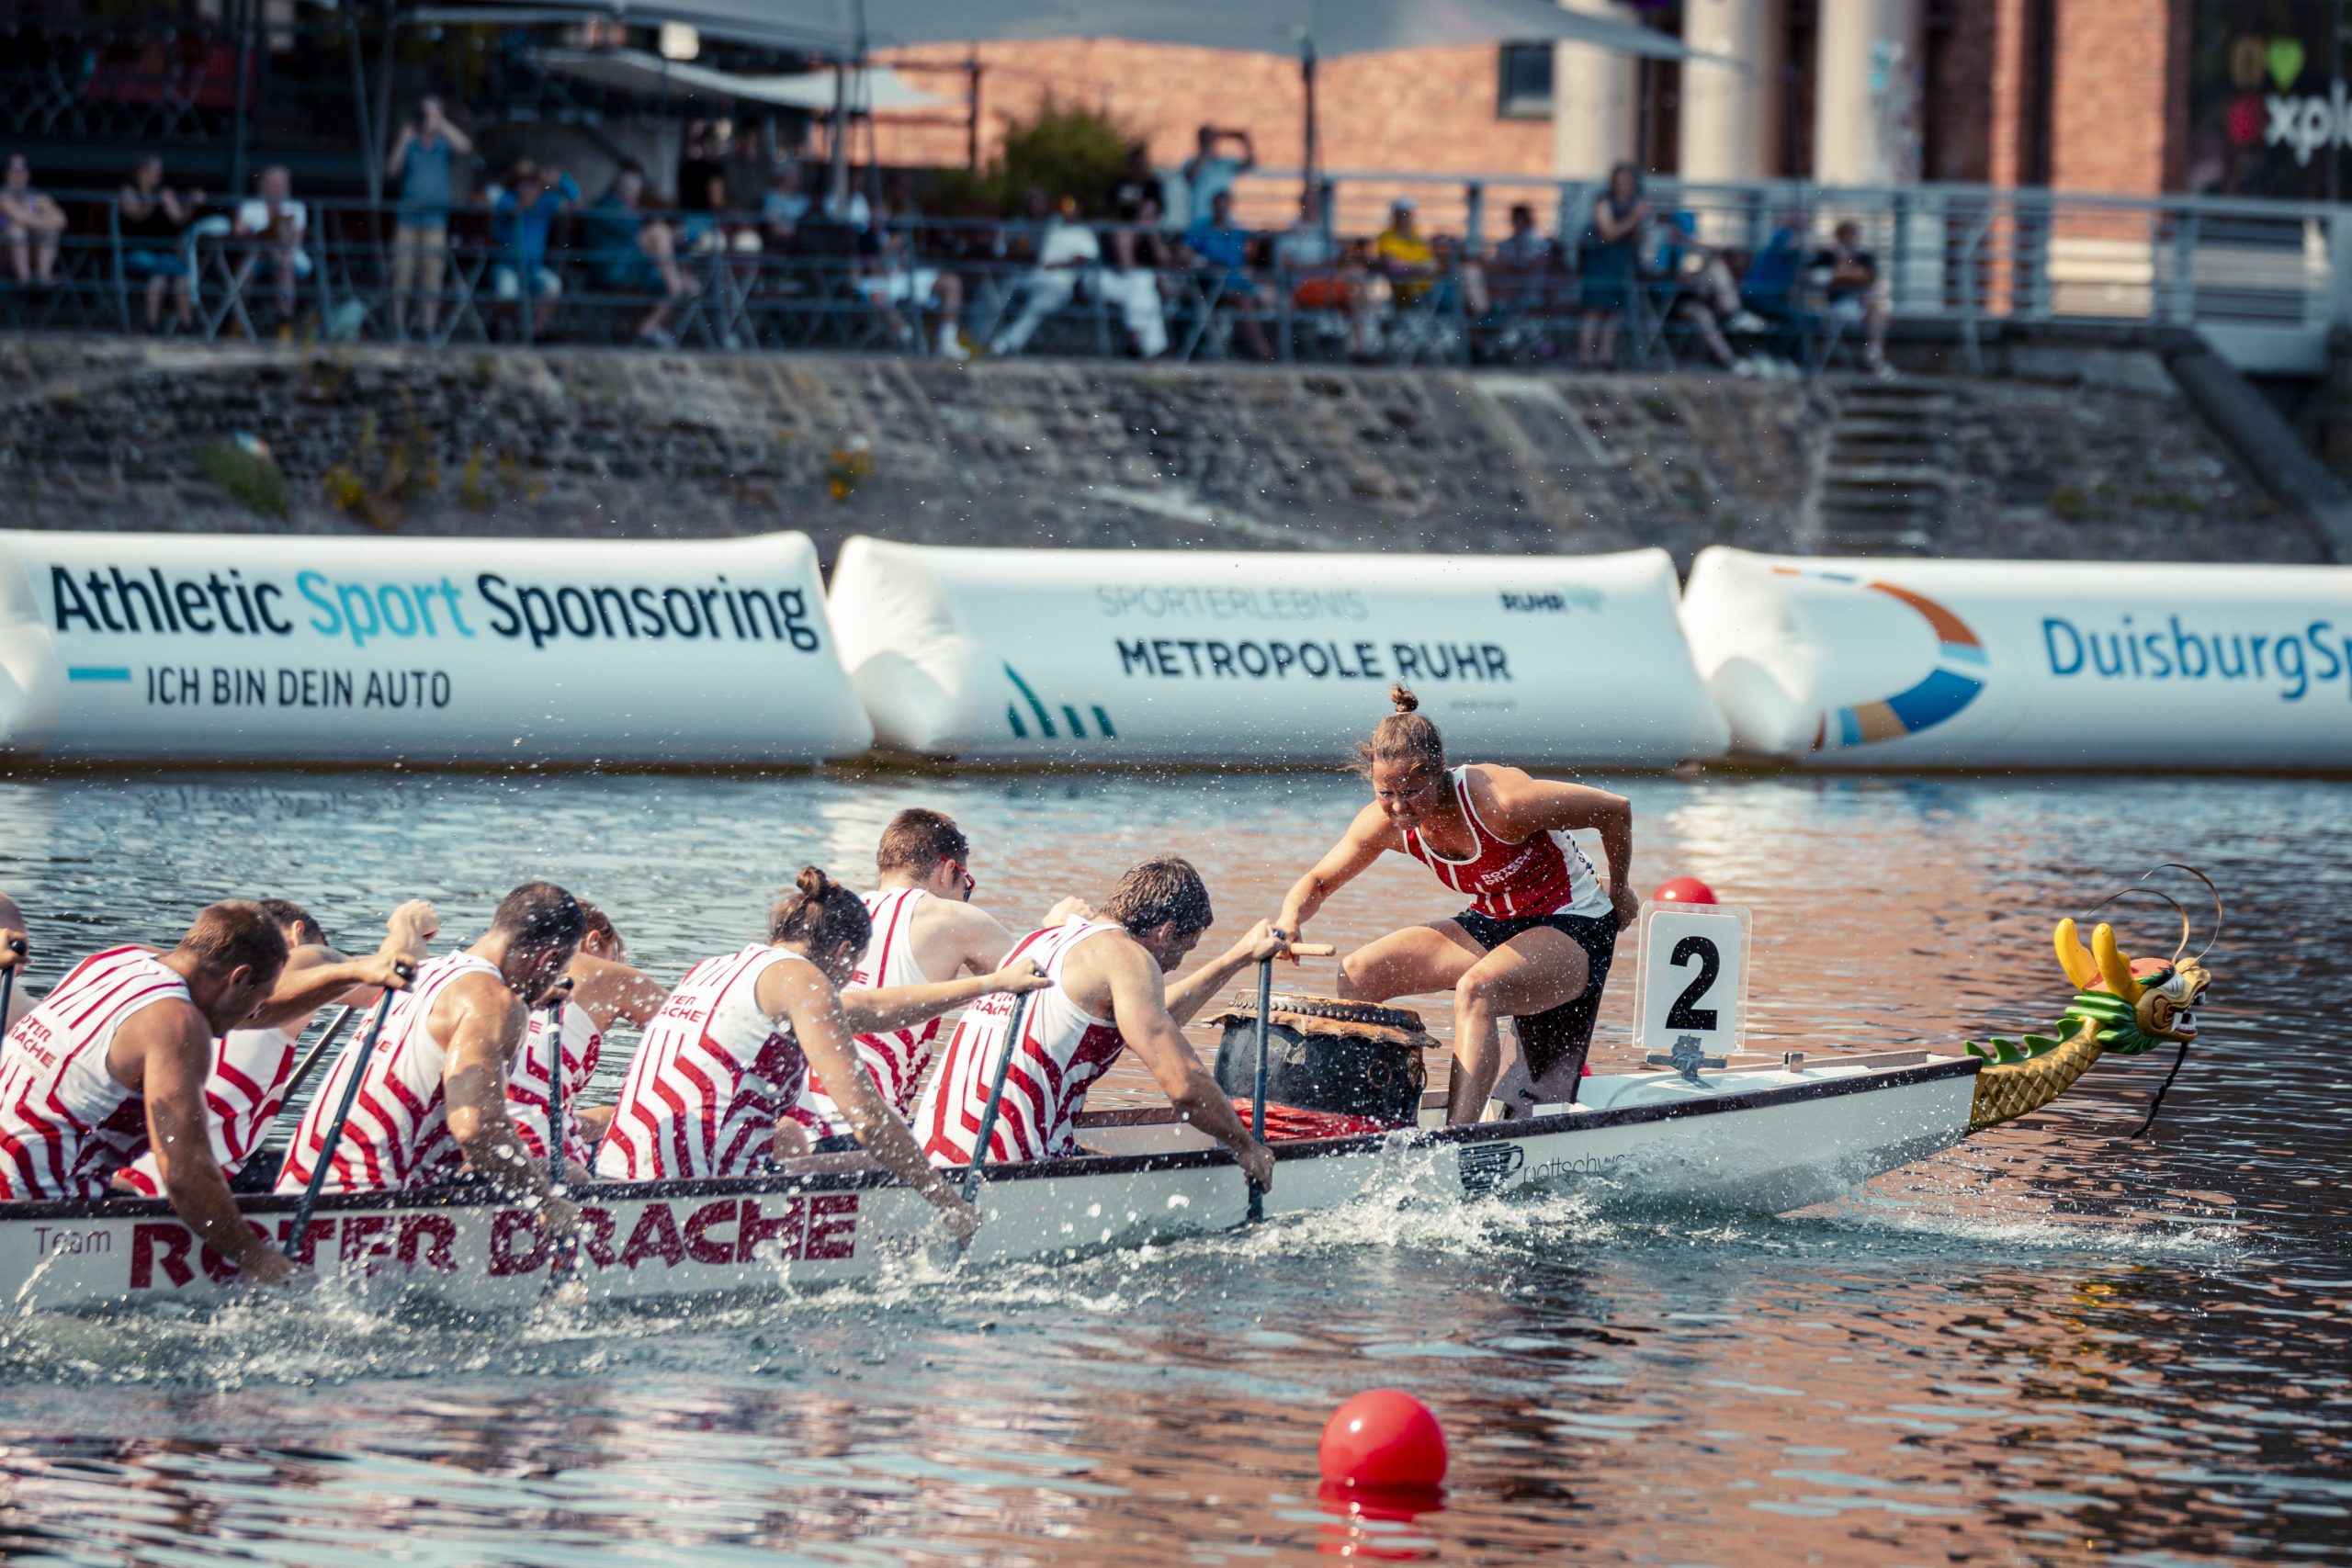 2003 wurde das Drachenboot-Team "Roter Drache Mülheim" gegründet. Damit gehört es zu den ersten leistungsorientierten Teams in Deutschland. Bei den Finals holten die Frauen Gold und im Drachenboot Mixed Silber. Foto: Eugen Shkolnikov